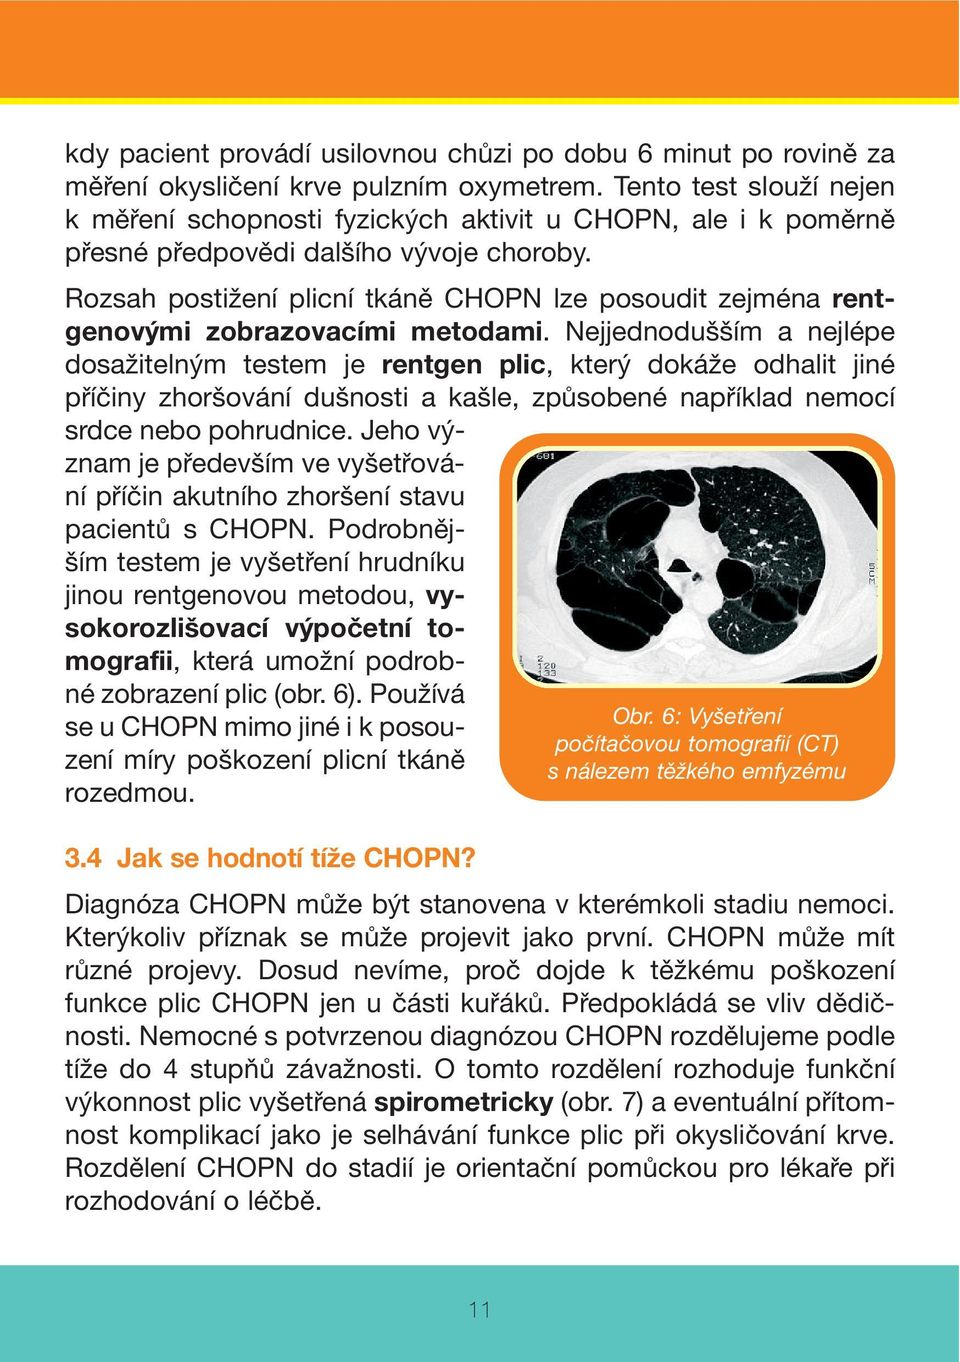 Rozsah postižení plicní tkáně CHOPN lze posoudit zejména rentgenovými zobrazovacími metodami.